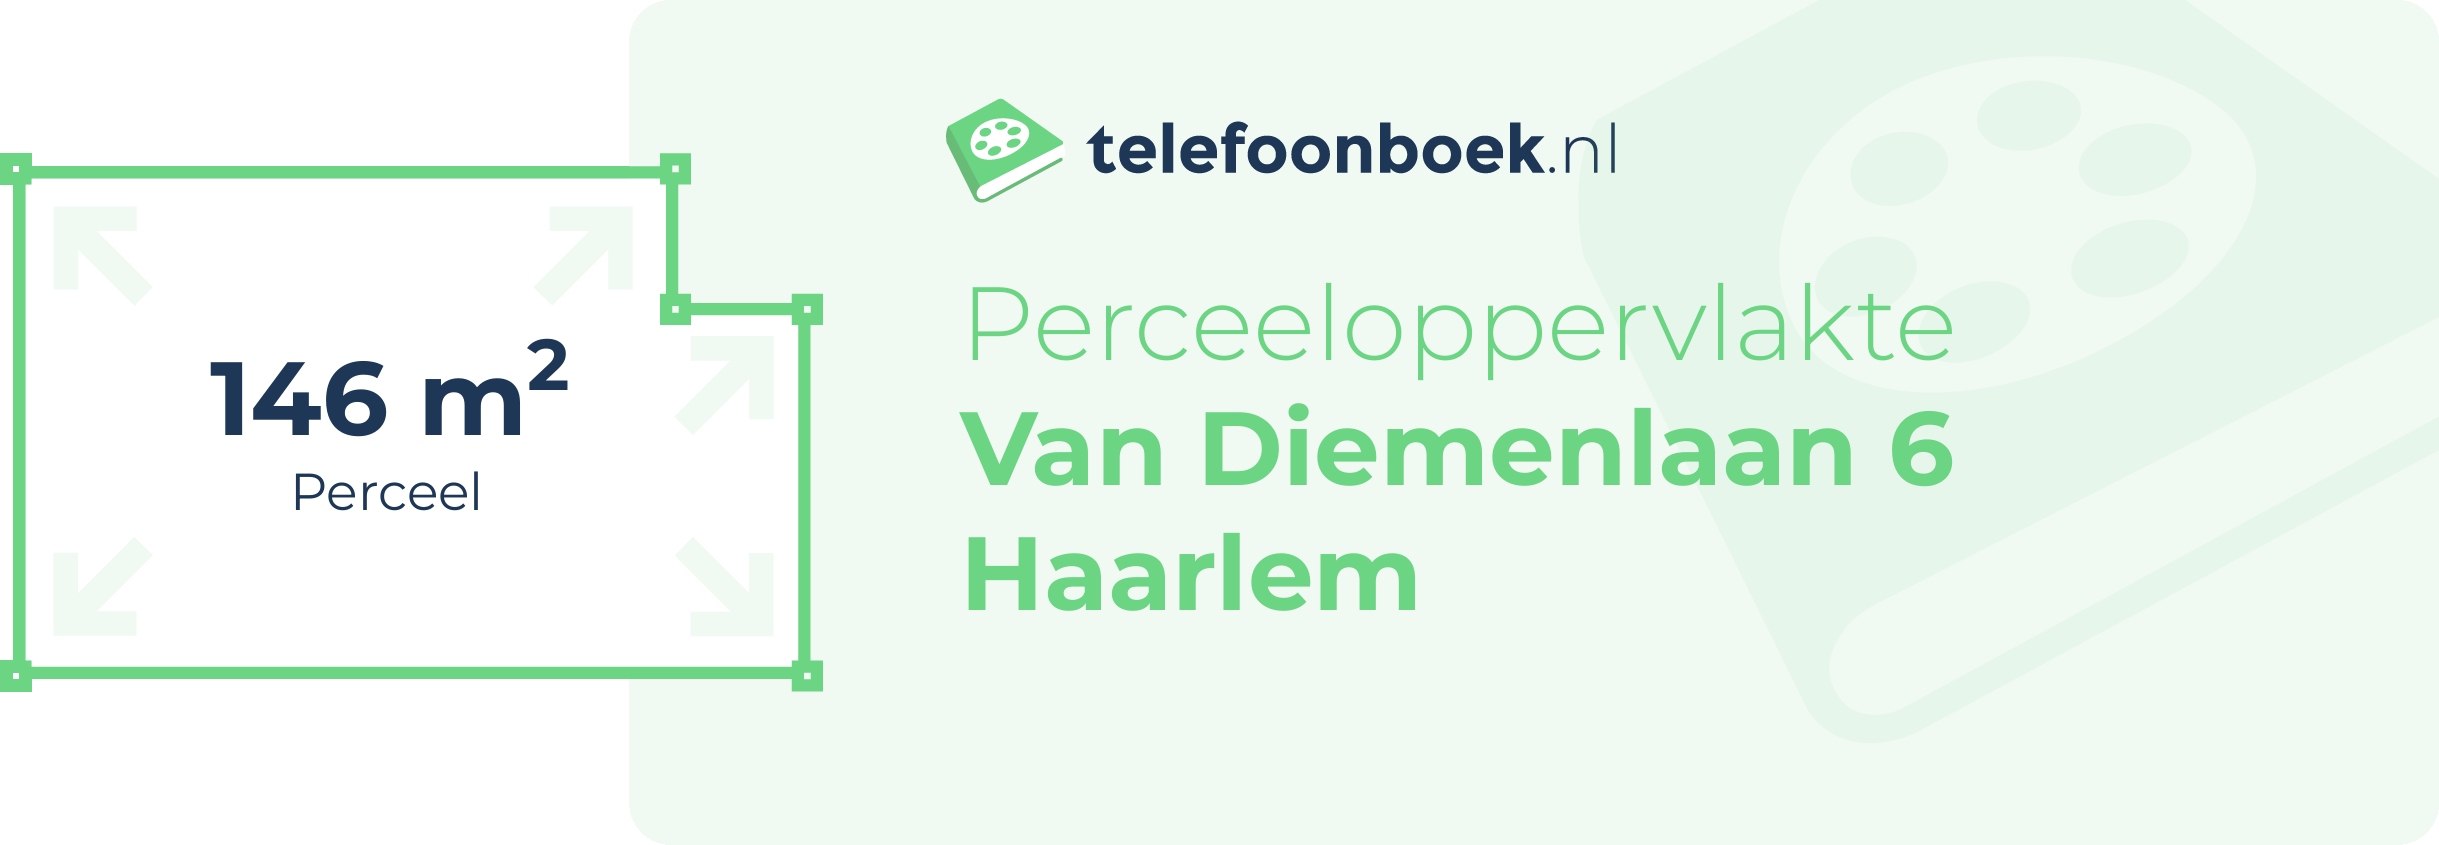 Perceeloppervlakte Van Diemenlaan 6 Haarlem